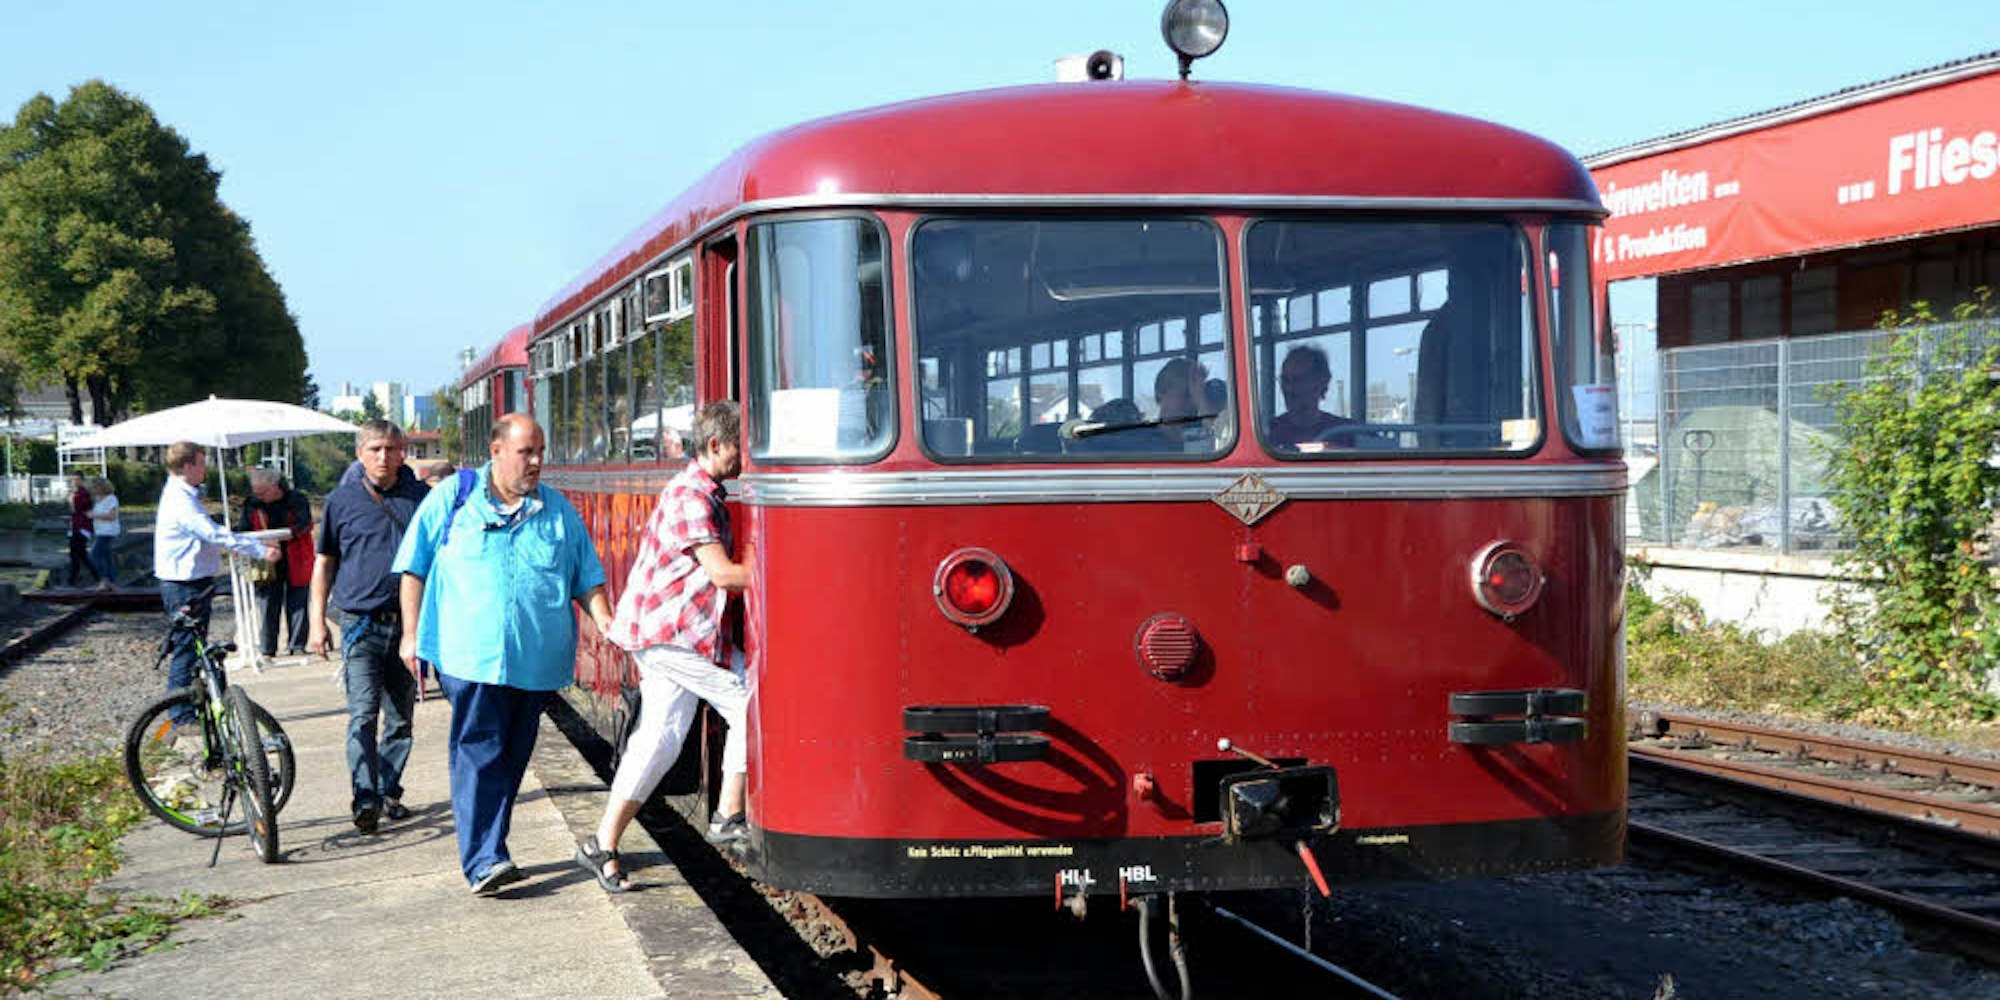 An Wochenenden und Feiertagen erfreut sich die Bördebahn großer Beliebtheit. Doch wann fährt sie an Werktagen?